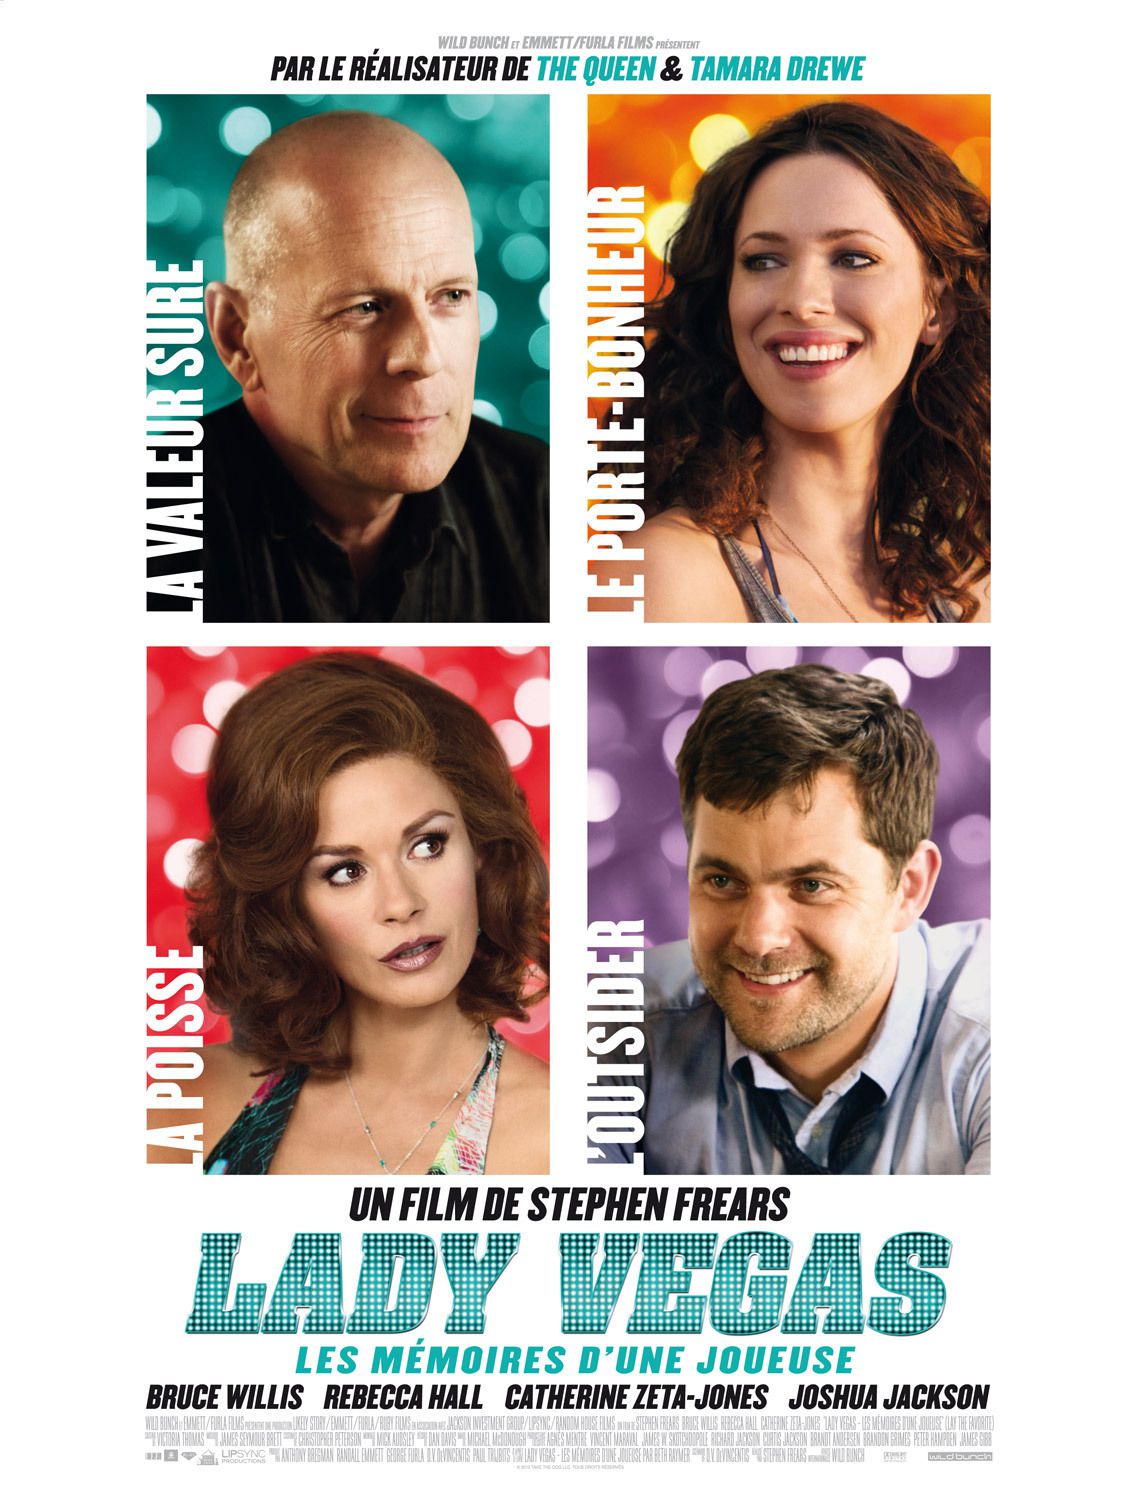 Lady Vegas, les mémoires d'une joueuse - Film (2012) streaming VF gratuit complet